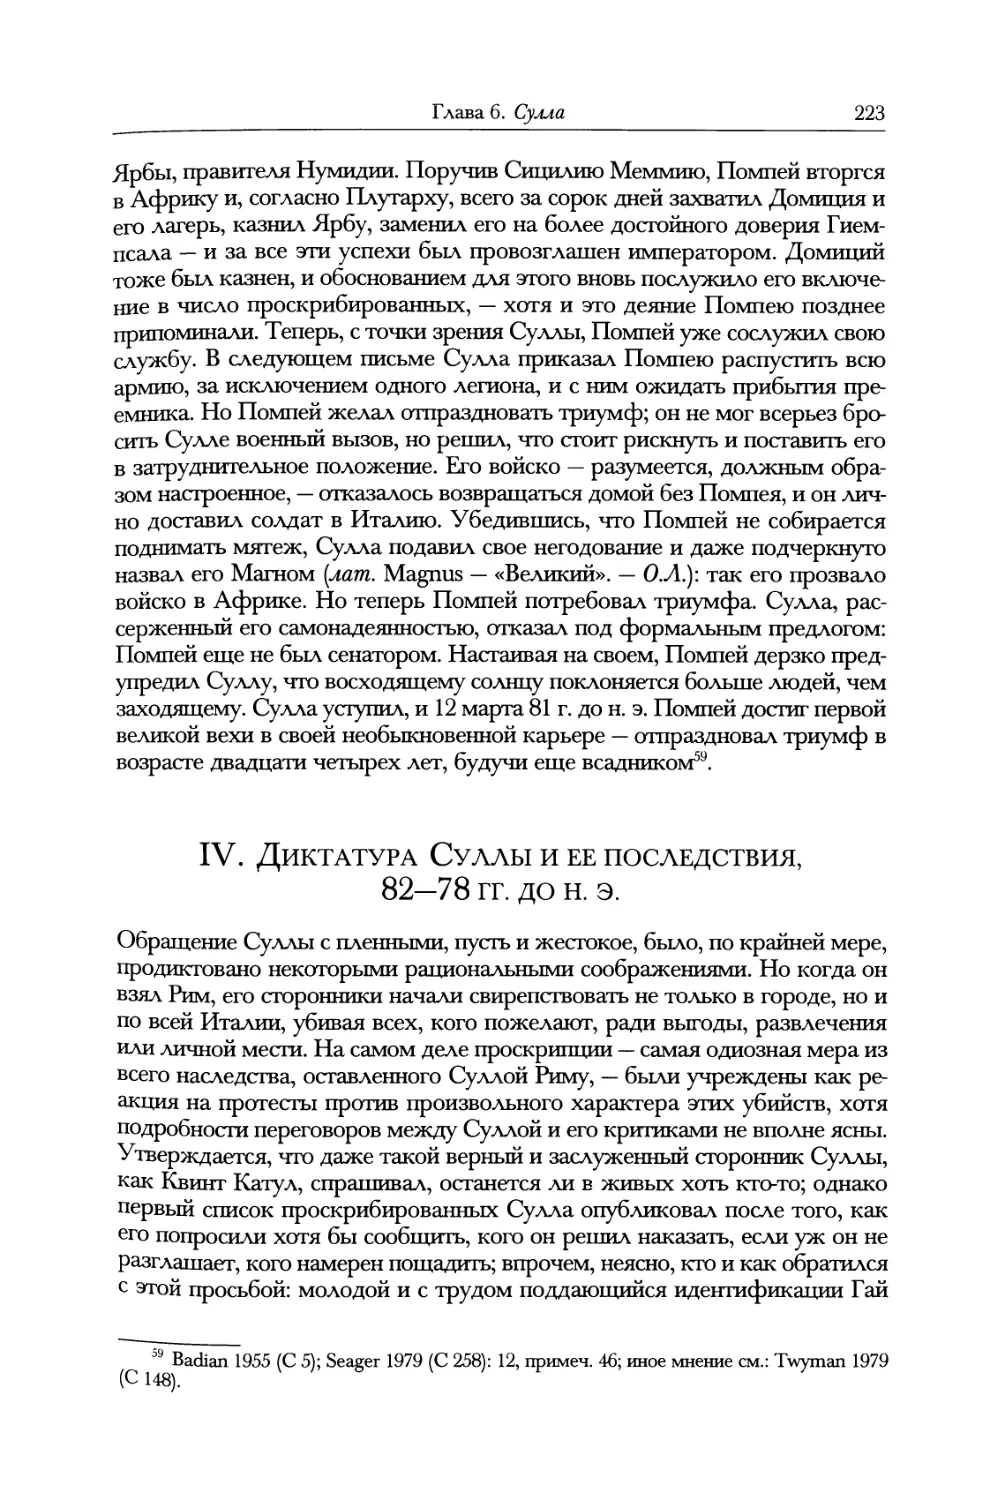 IV. Диктатура Суллы и ее последствия, 82—78 гг. до н. э.